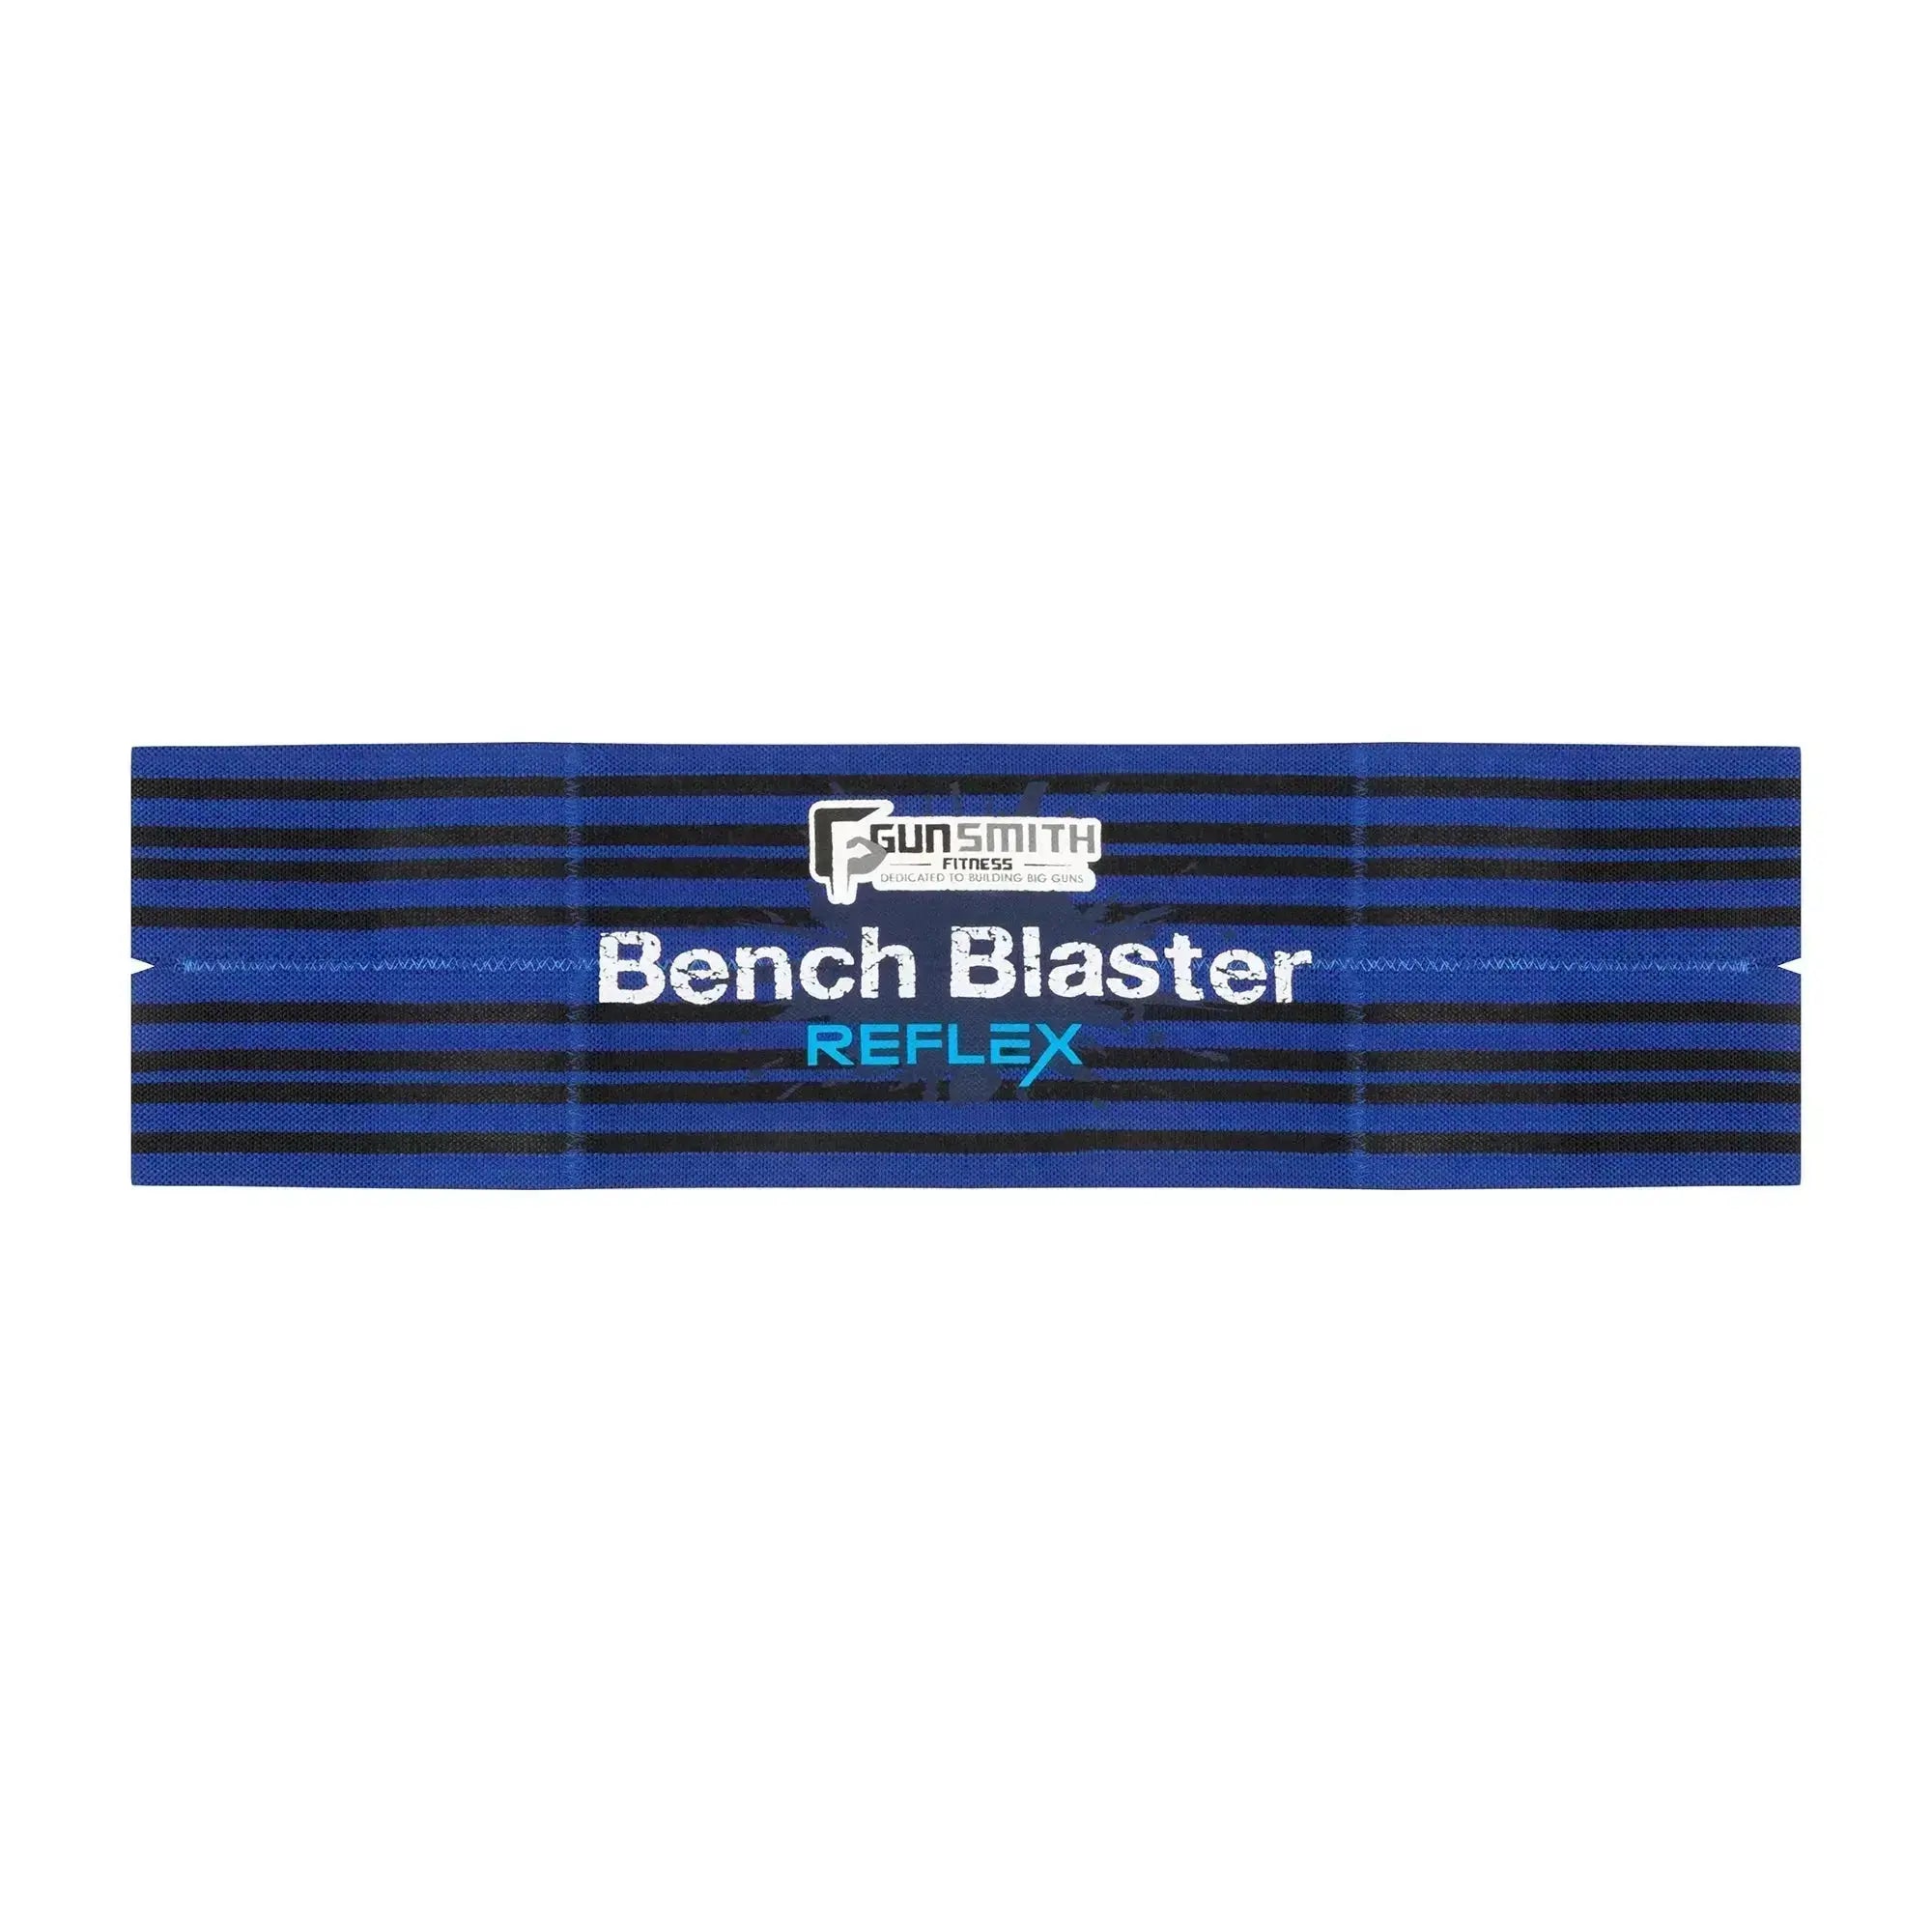 Bench Blaster Reflex - Gunsmith Fitness